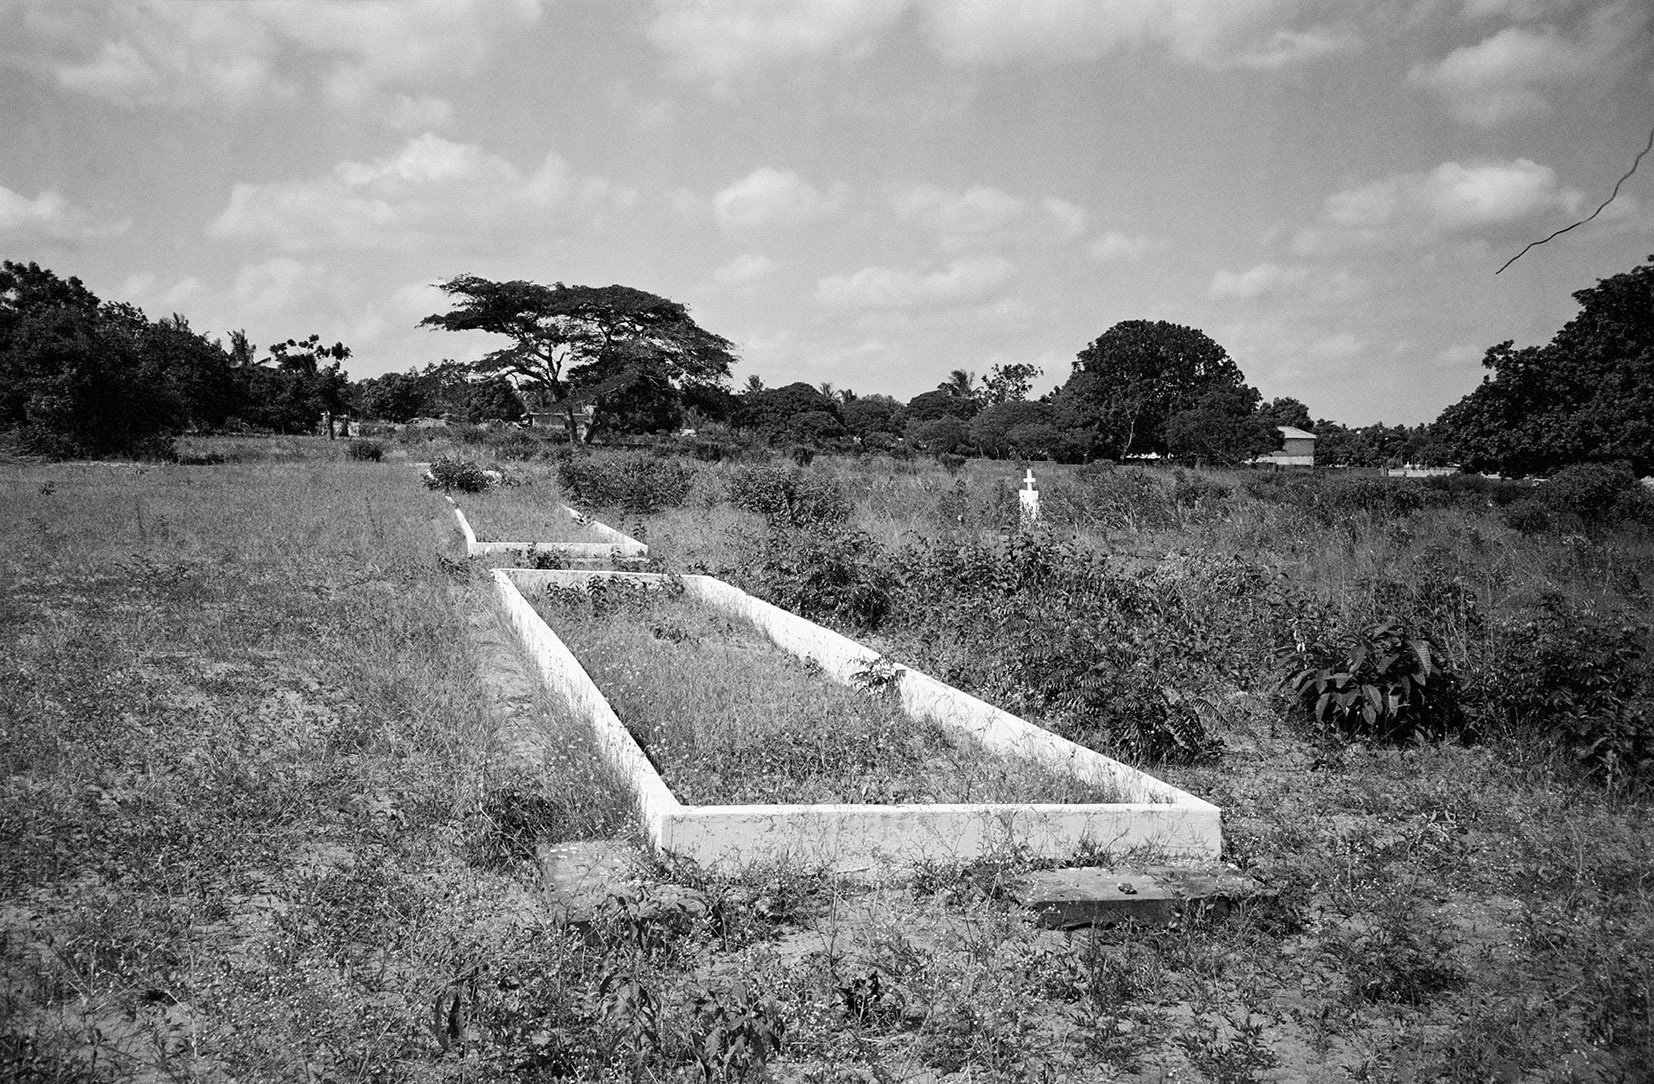  Fevererio 3 mass-grave, Mozambique/ 2002 